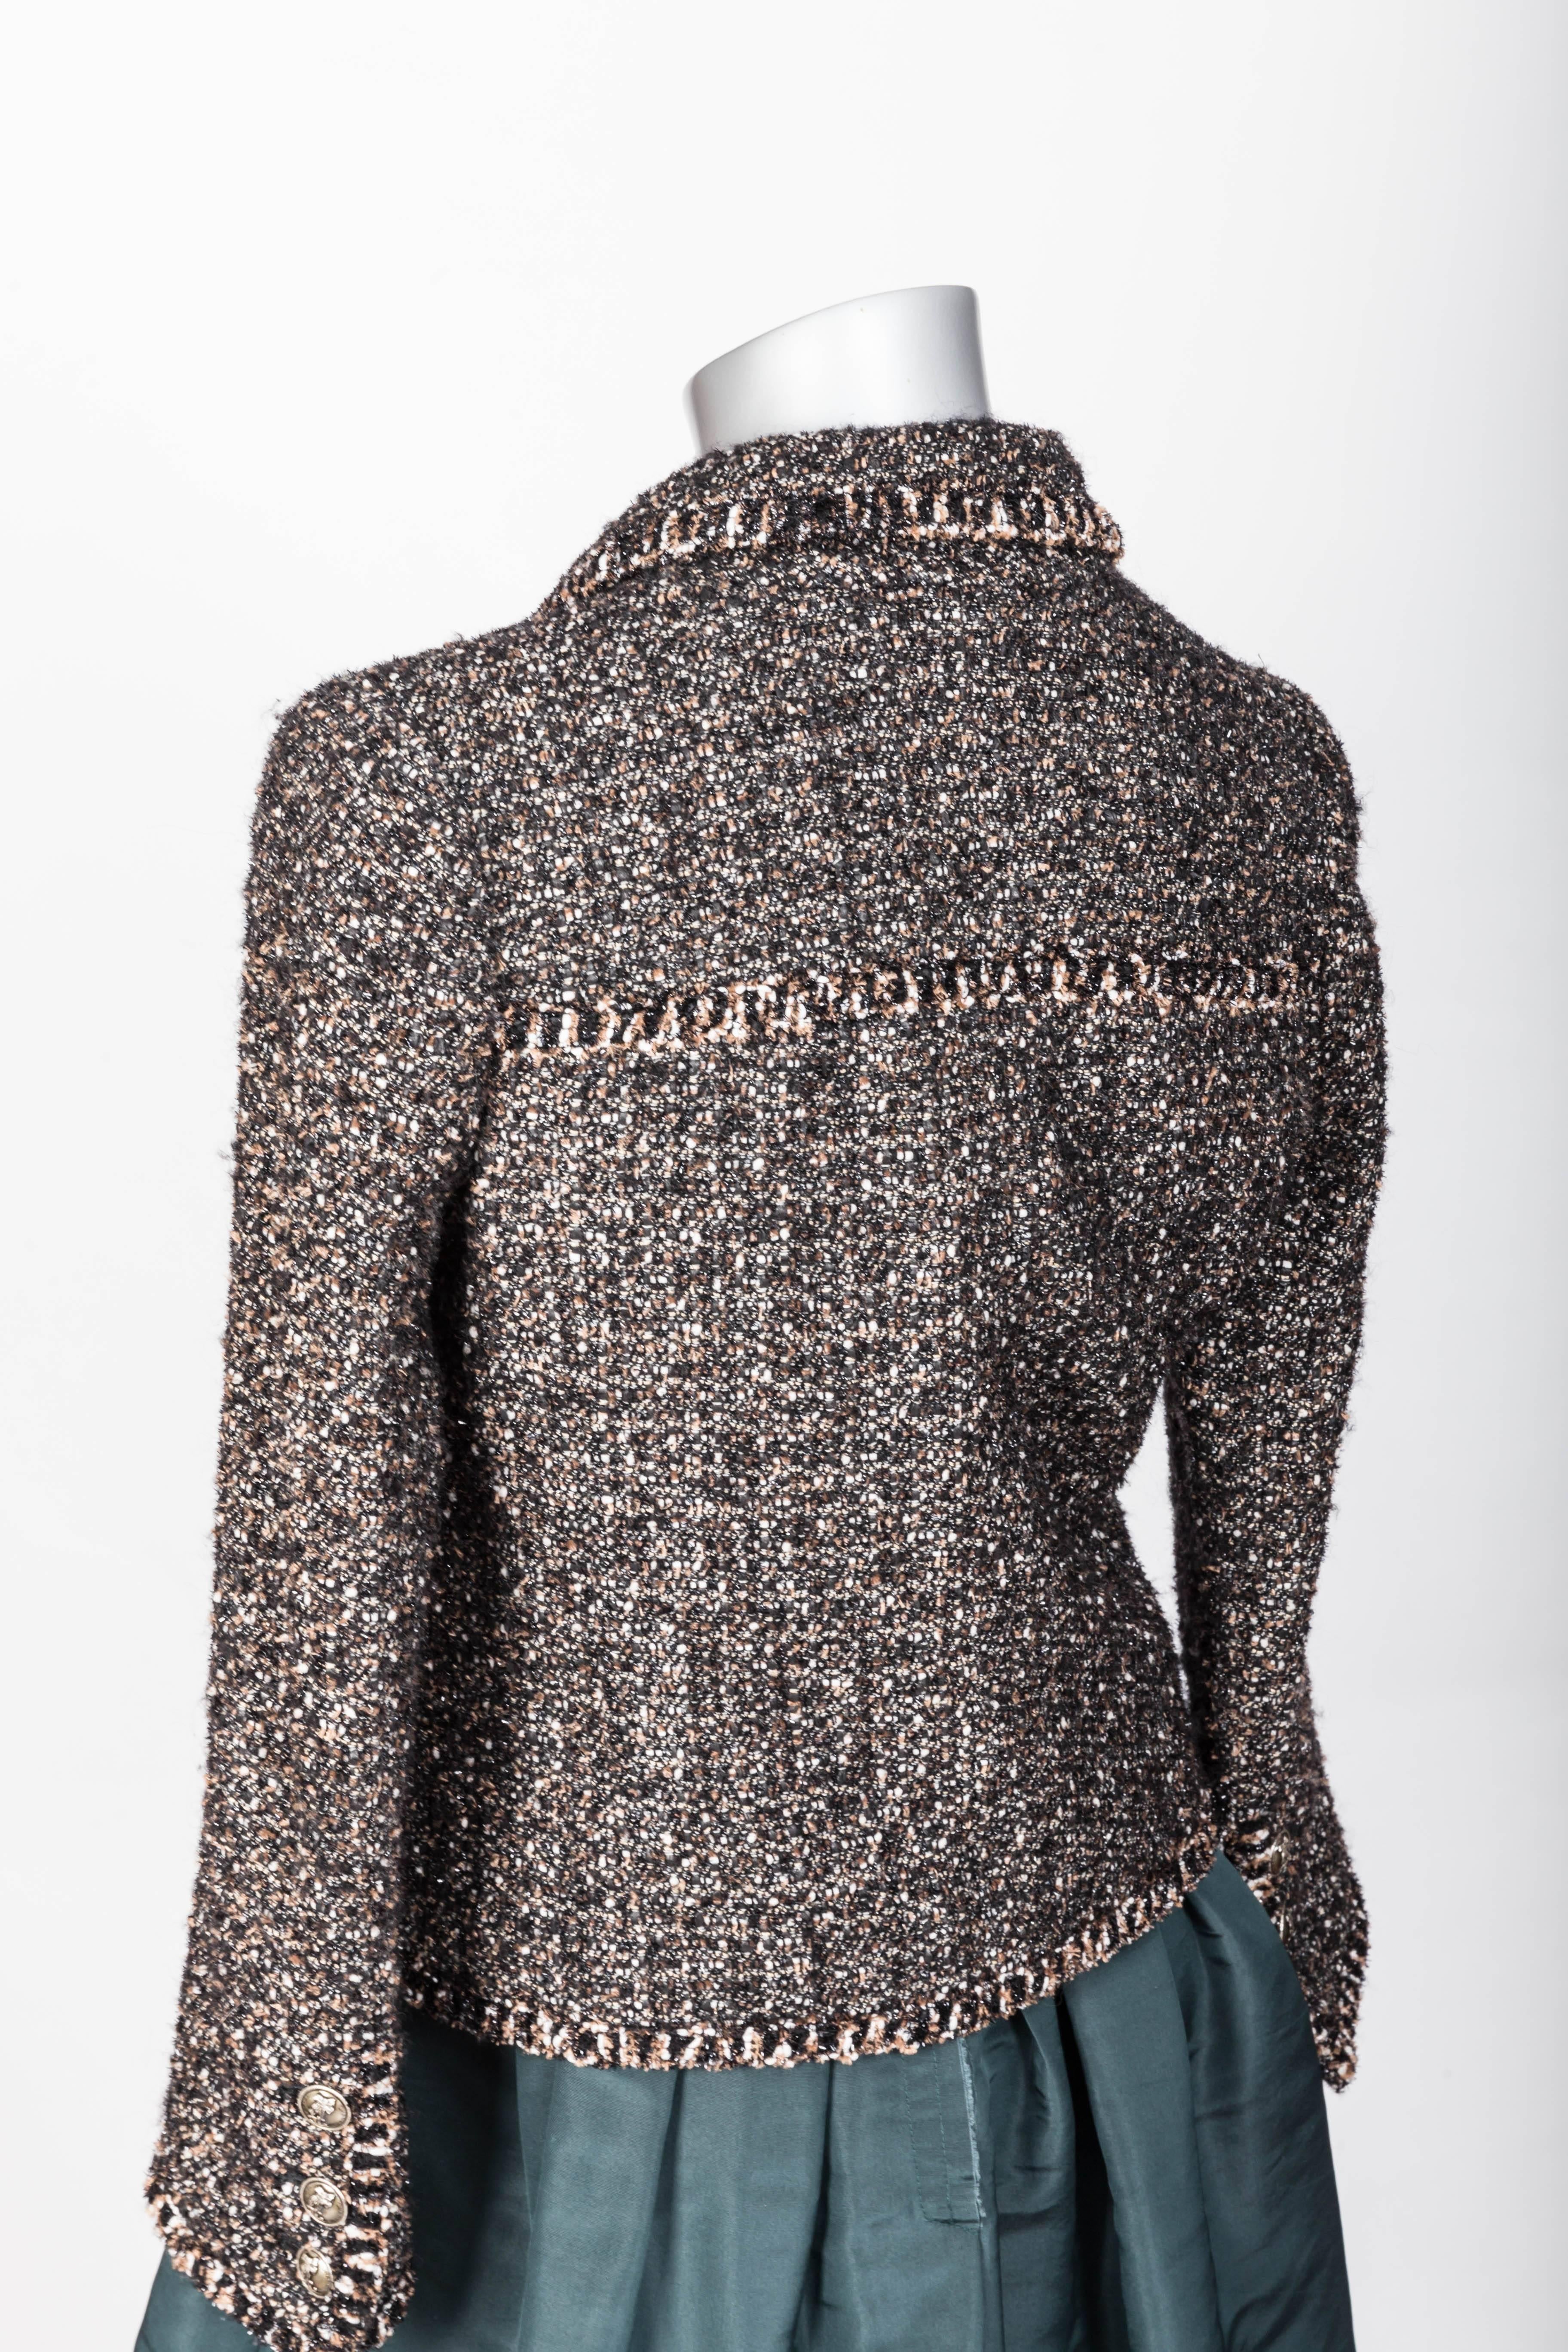 Chanel Metallic Tweed Jacket - 34 2